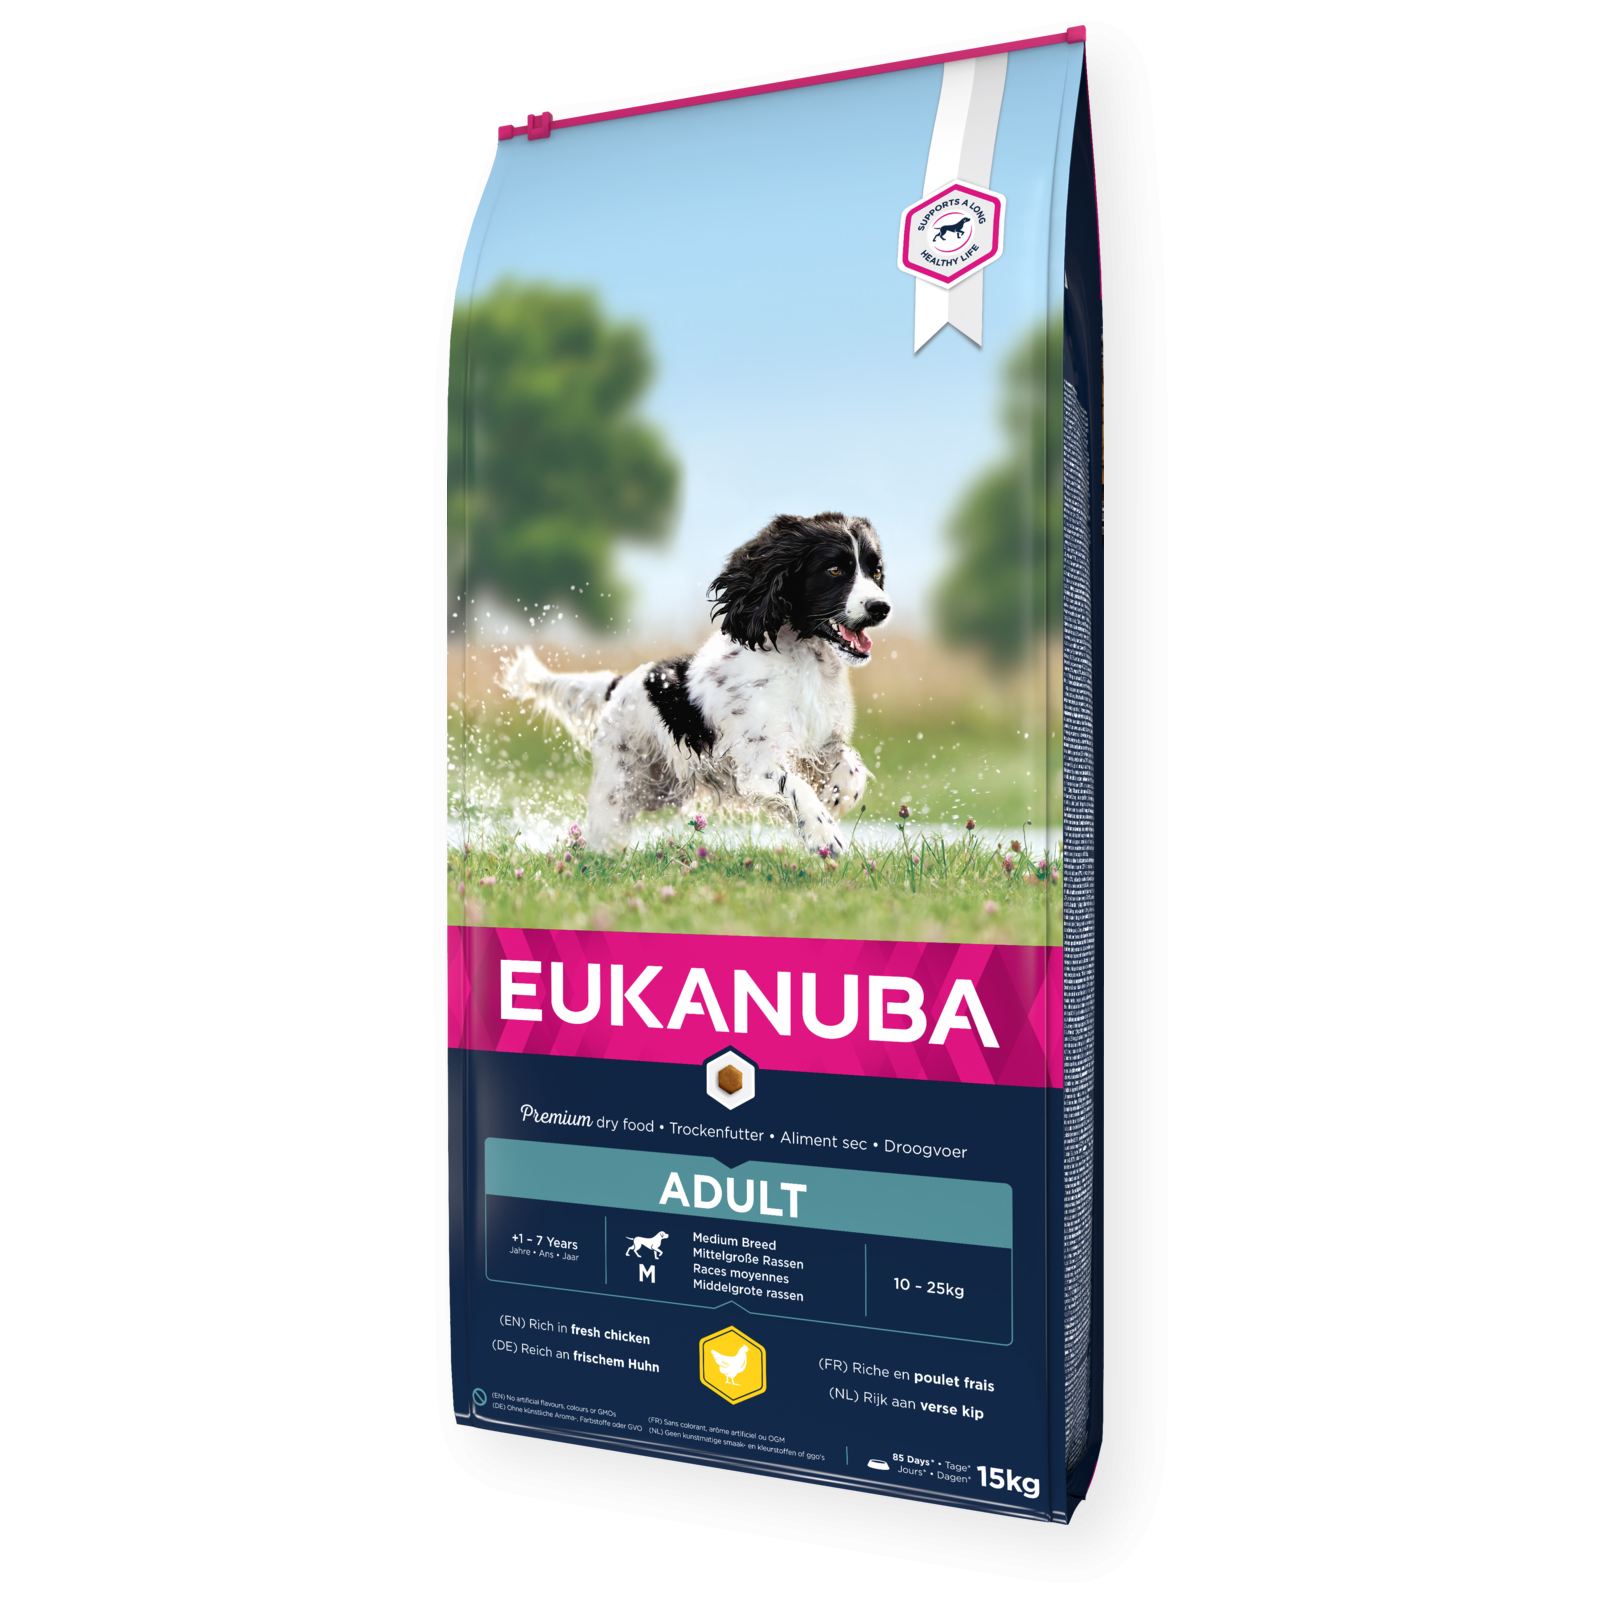 Eukanuba Active Adult Medium Breed für Hunde mittelgroßer Rassen